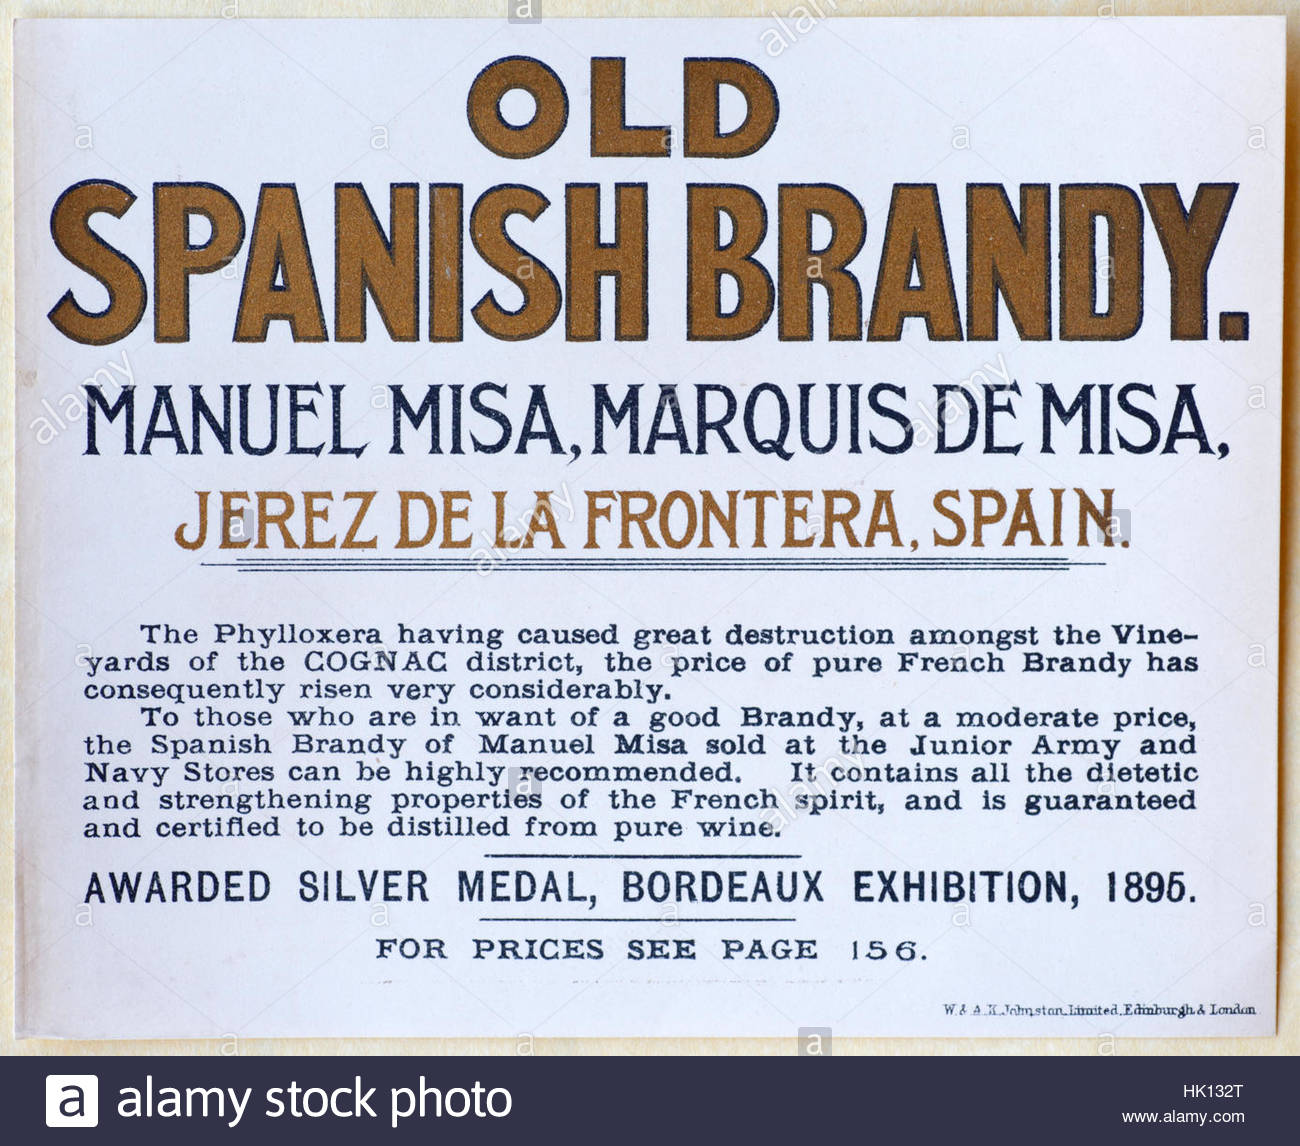 Alte spanische Brandy, original Vintage Werbung von ca. 1900 Stockfoto